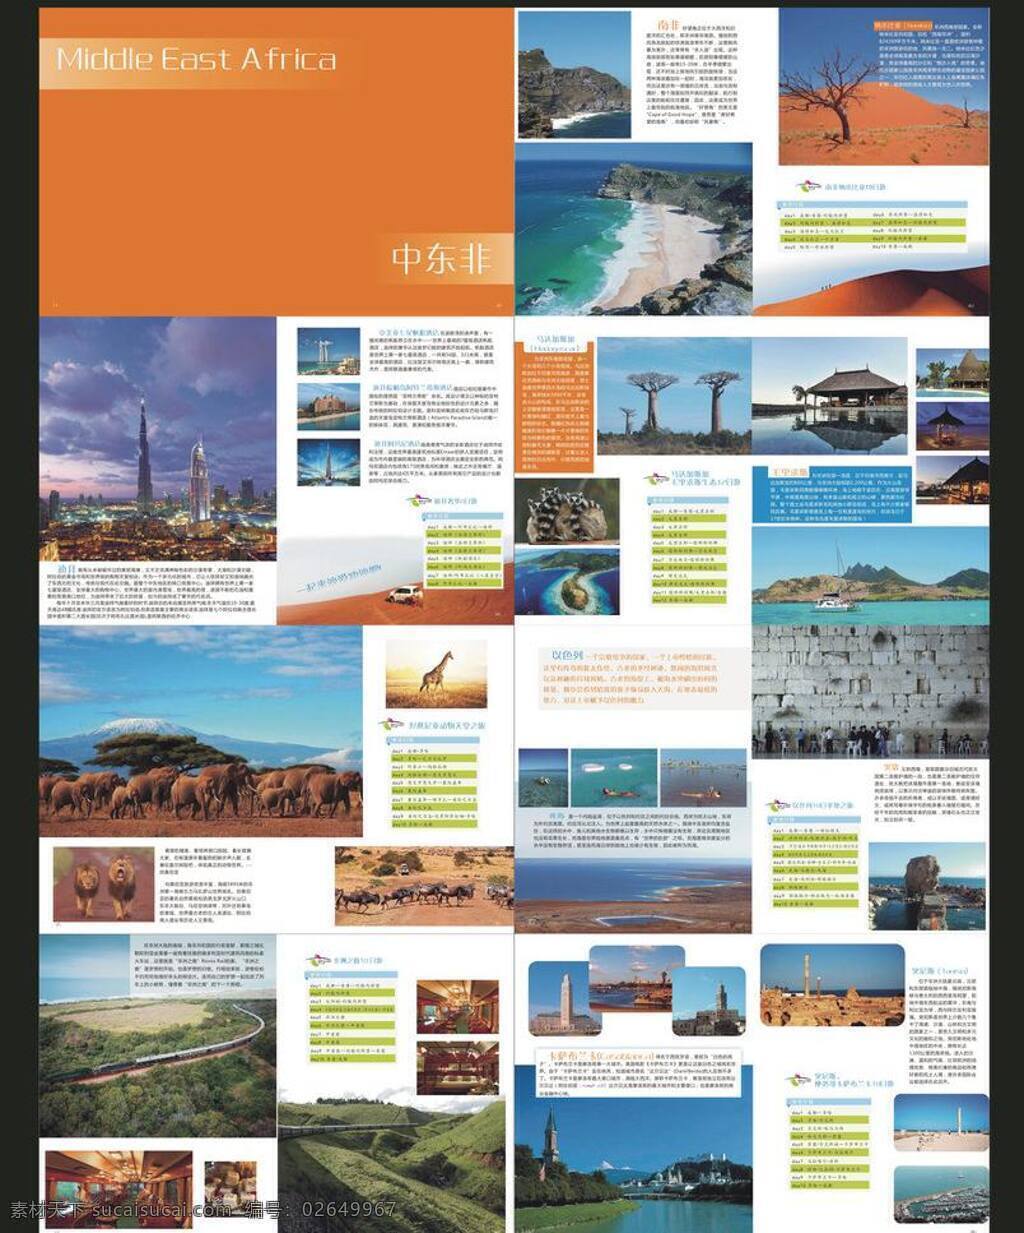 中东非 国外 画册 画册设计 景点 旅游 旅游矢量素材 旅游模板下载 矢量 psd源文件